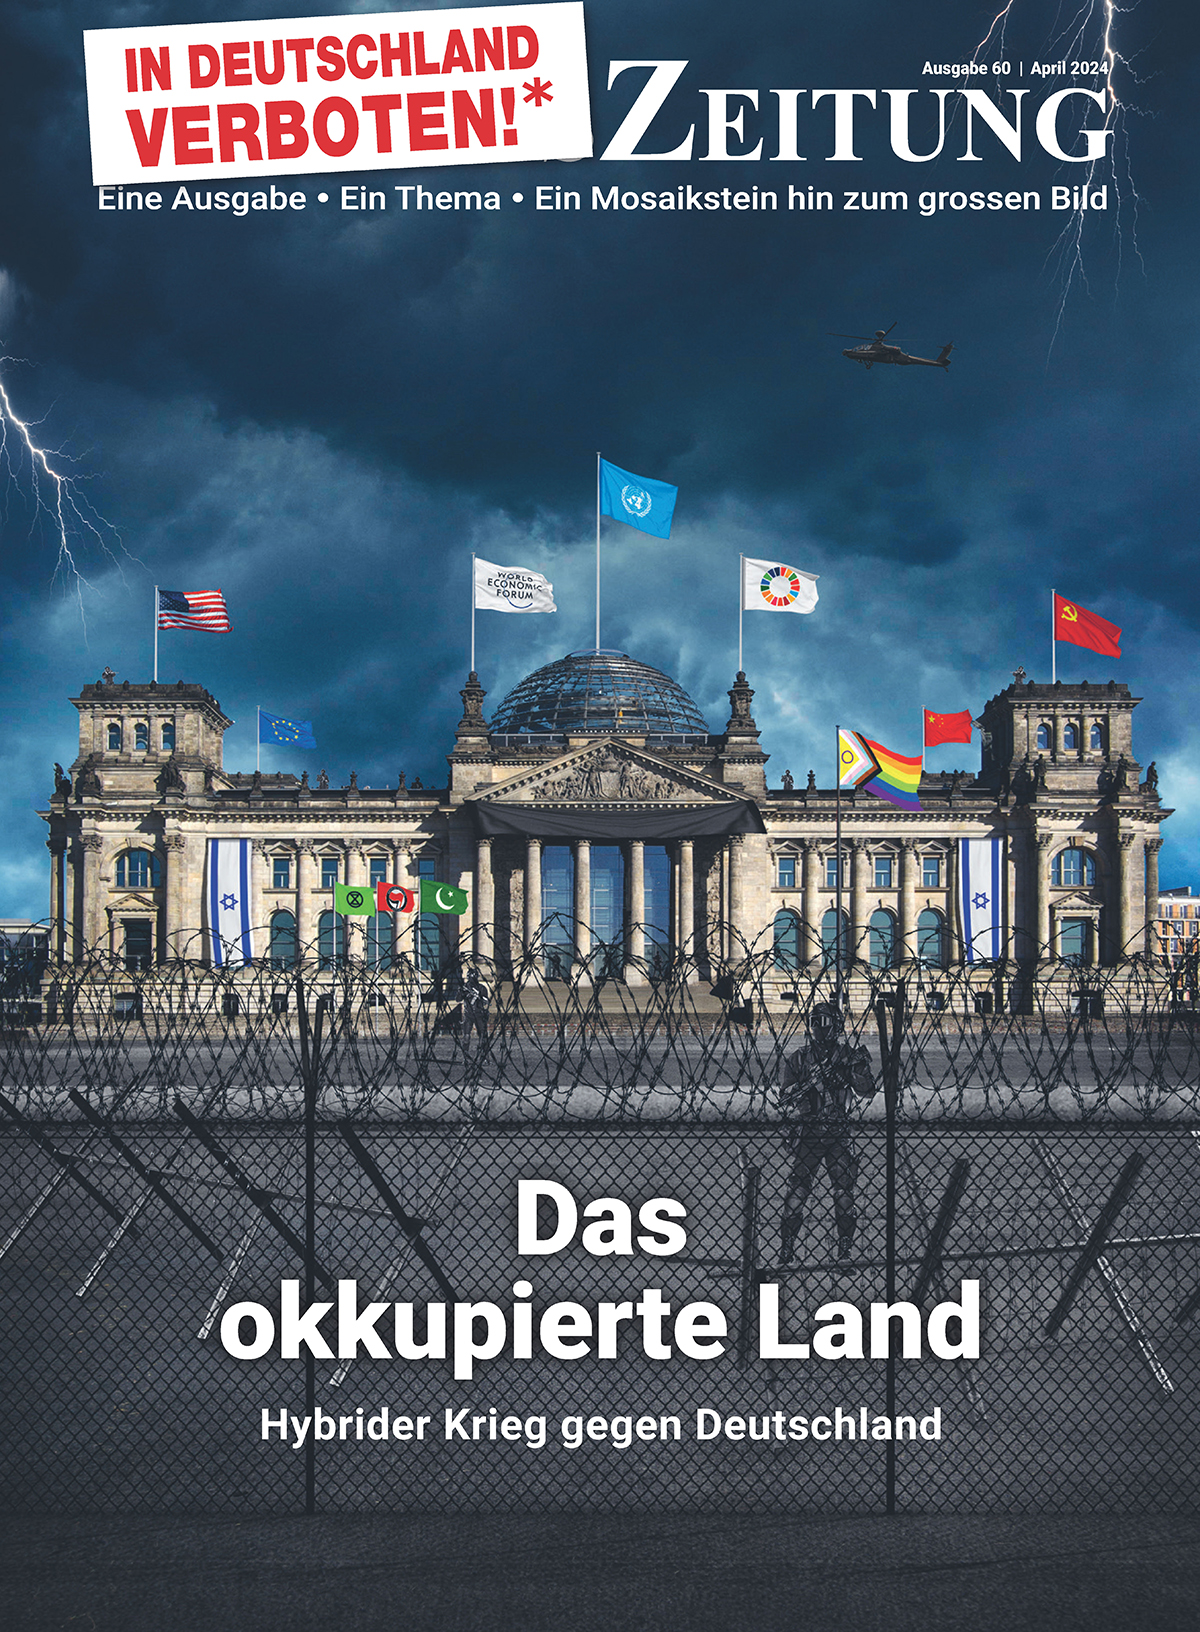 Ausgabe 60: Das okkupierte Land - Hybrider Krieg gegen Deutschland 